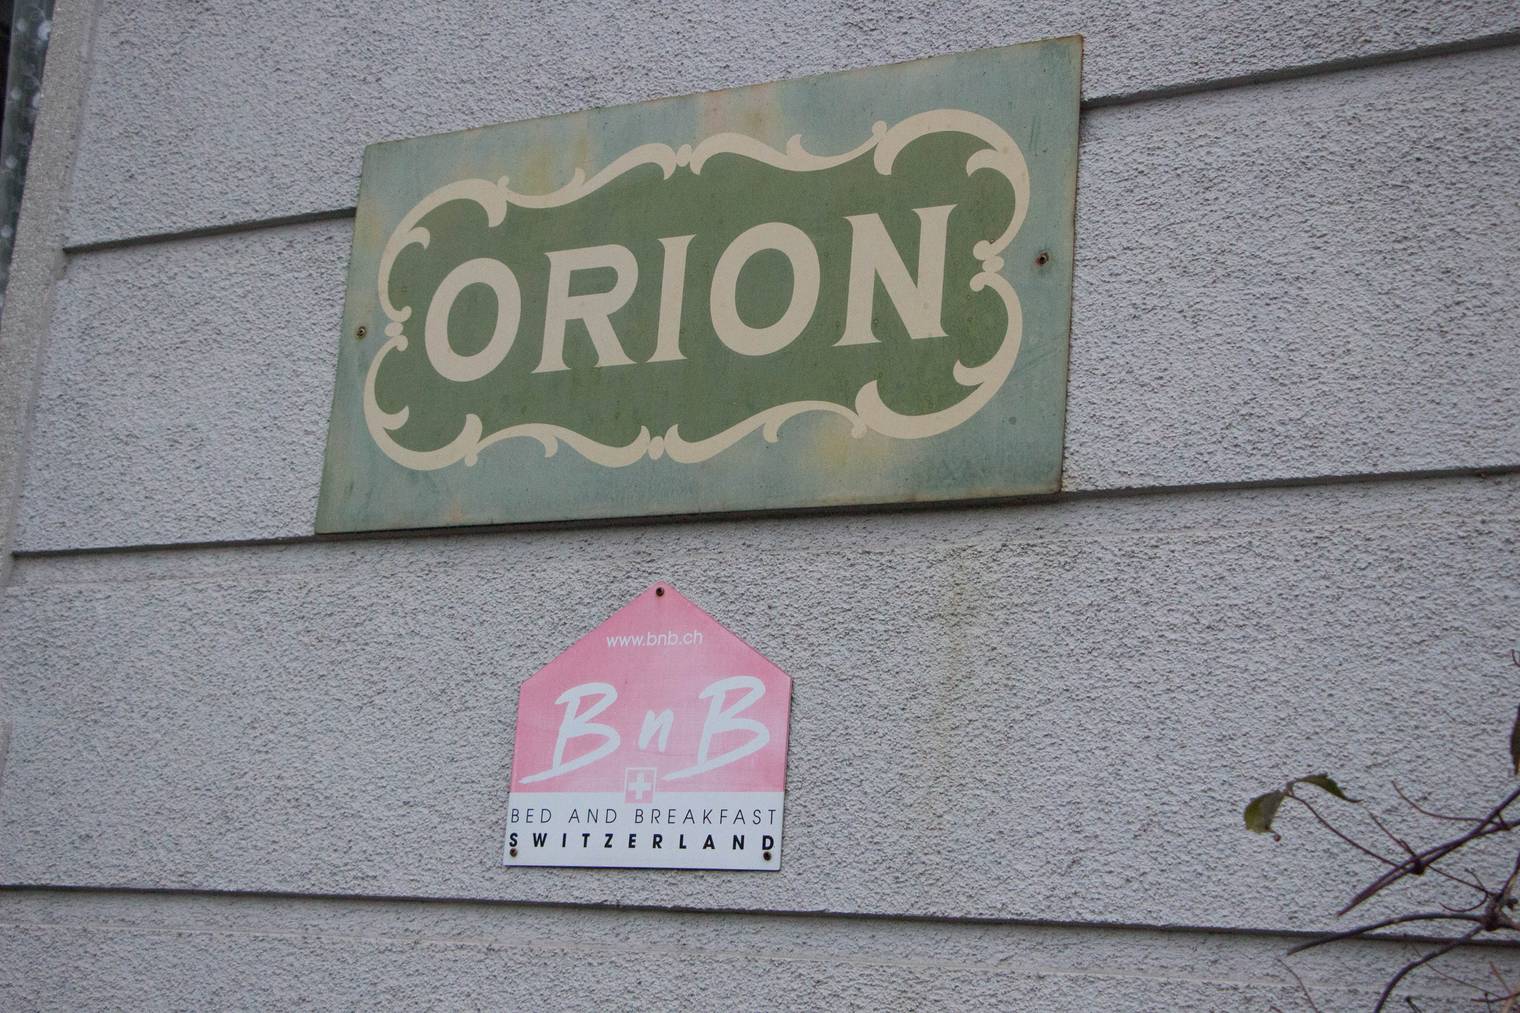 Das Bed and Breakfast Orion muss sich gegen Airbnb behaupten. (Bild: FM1Today/Tobias Bruggmann)